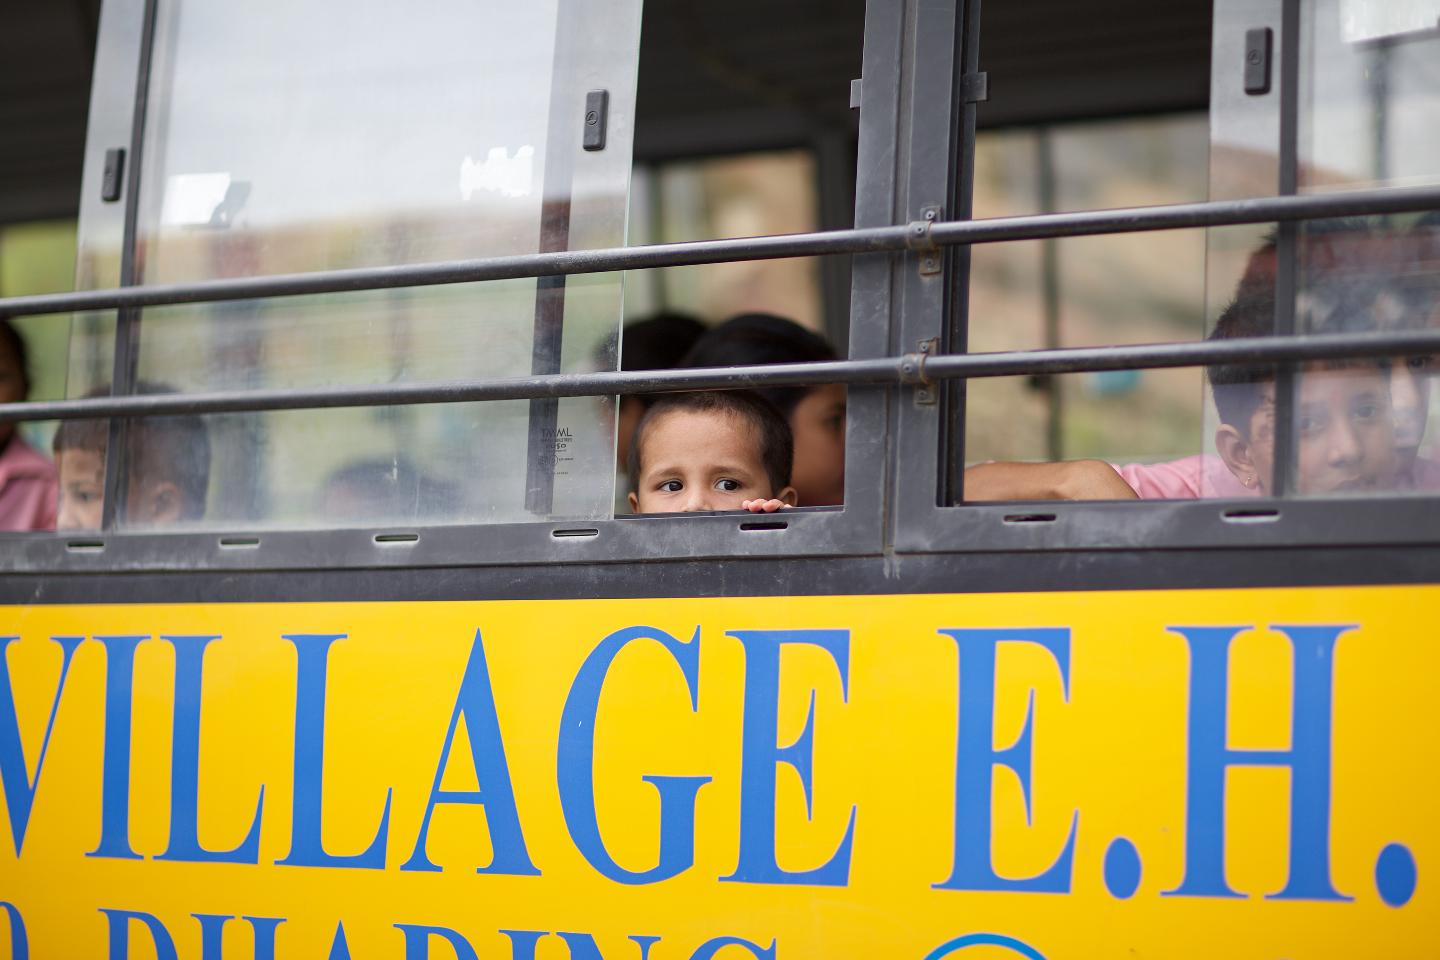 네팔 버스. 창문에 고개를 내밀고 있는 아이의 모습 